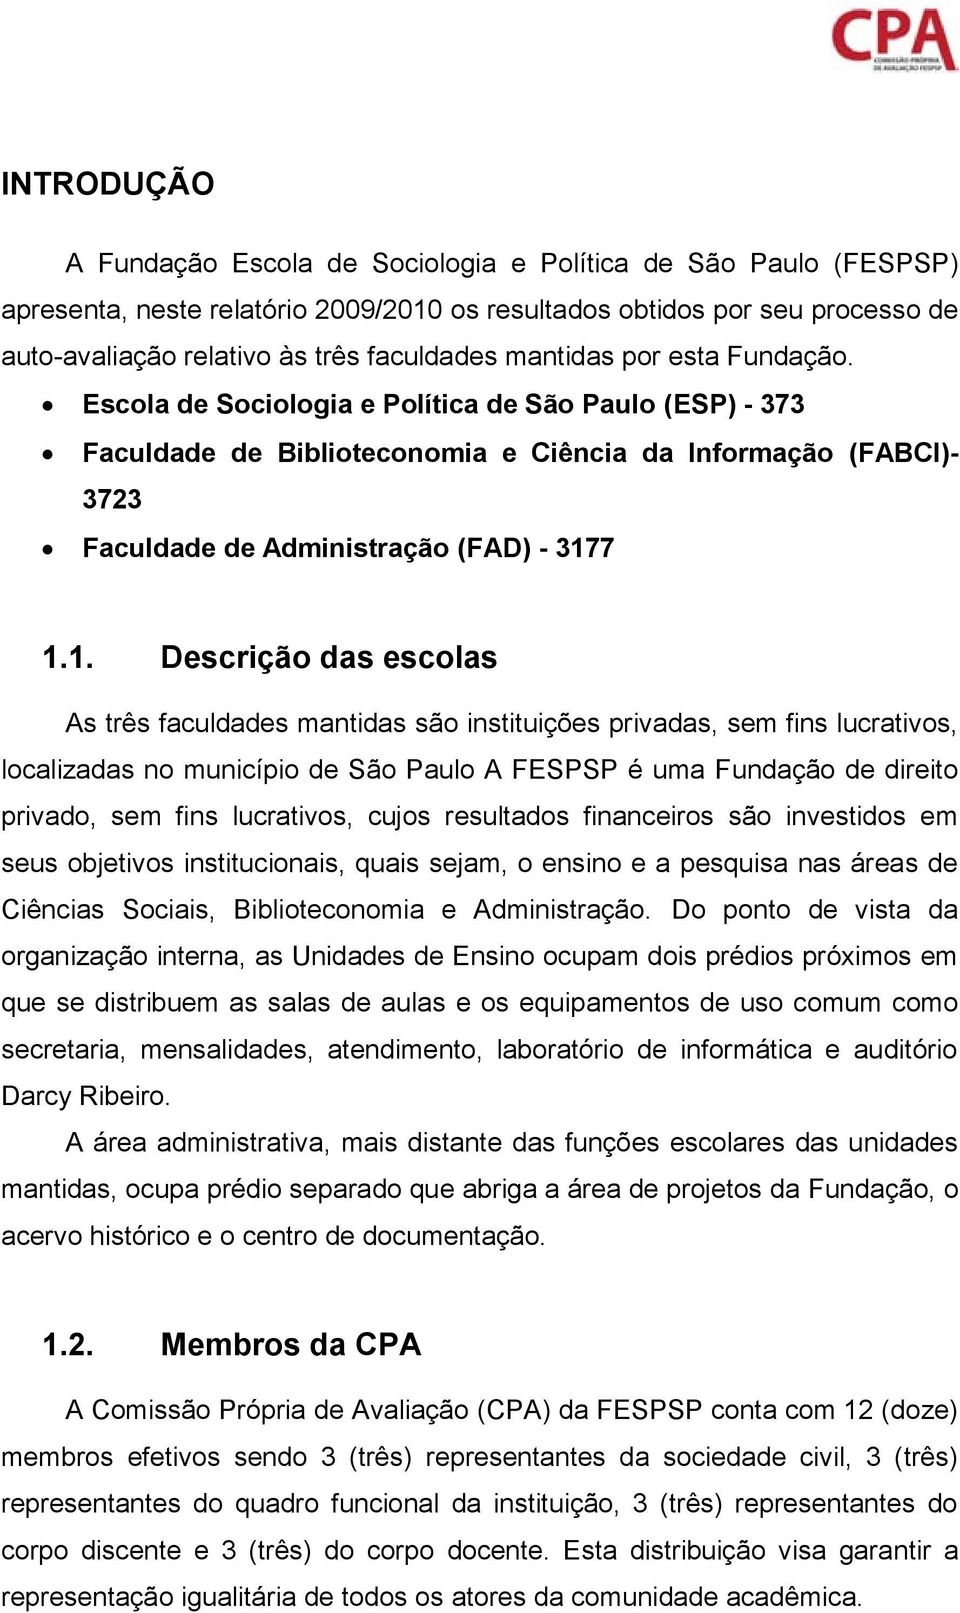 7 1.1. Descrição das escolas As três faculdades mantidas são instituições privadas, sem fins lucrativos, localizadas no município de São Paulo A FESPSP é uma Fundação de direito privado, sem fins